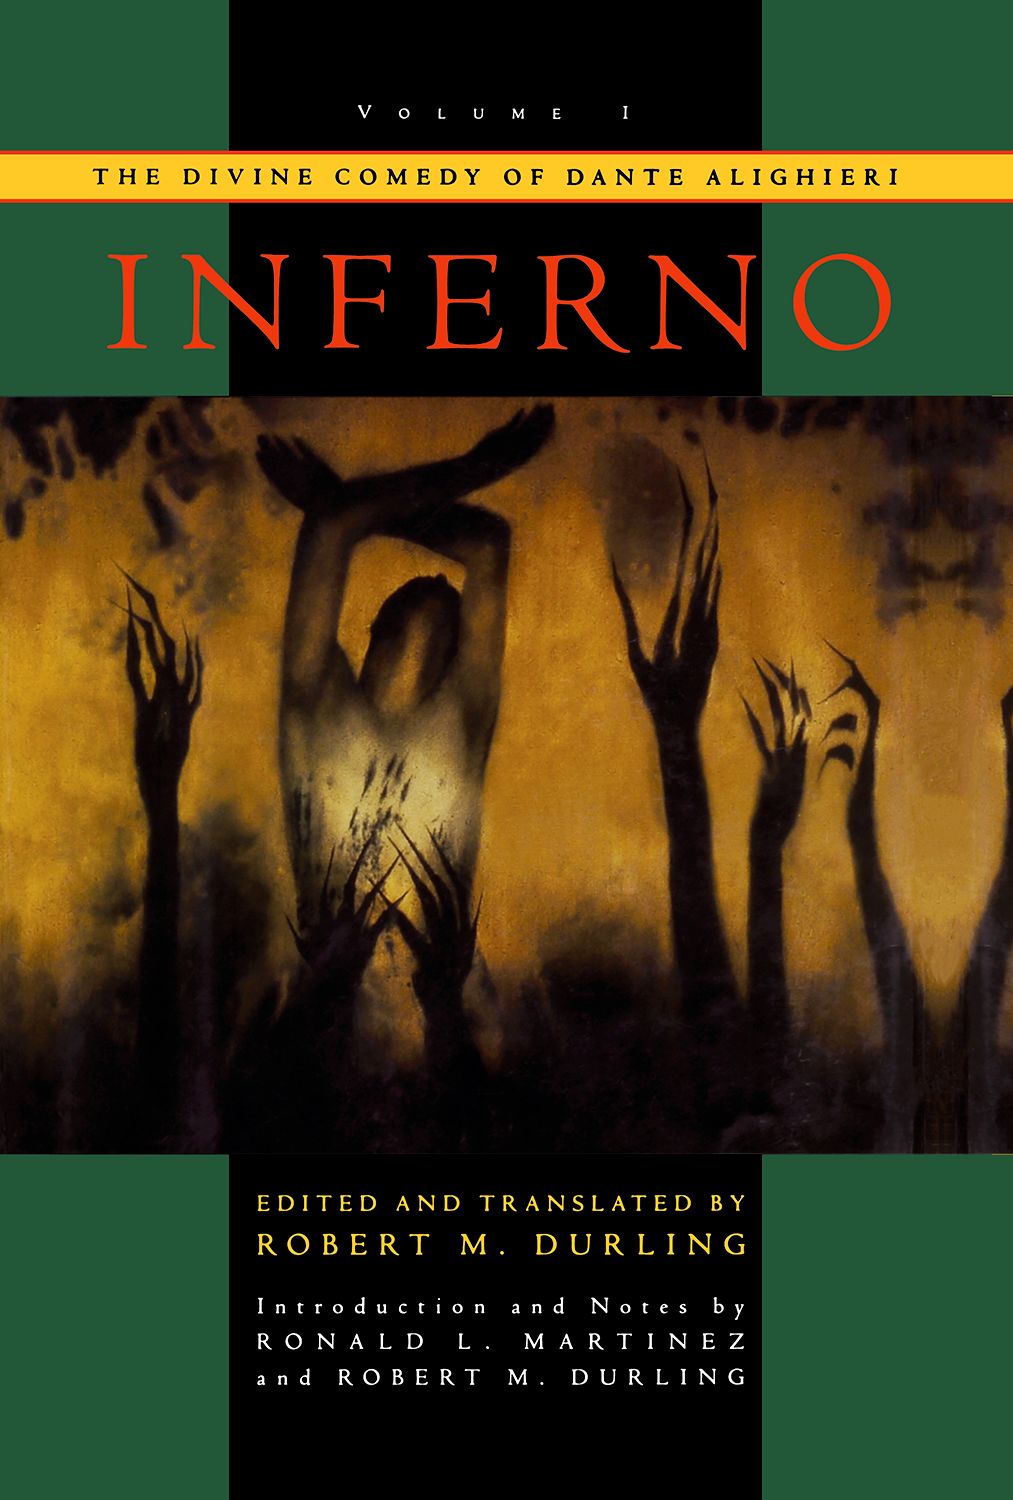 Inferno (Dante, Divine Comedy) - Mythgard Institute